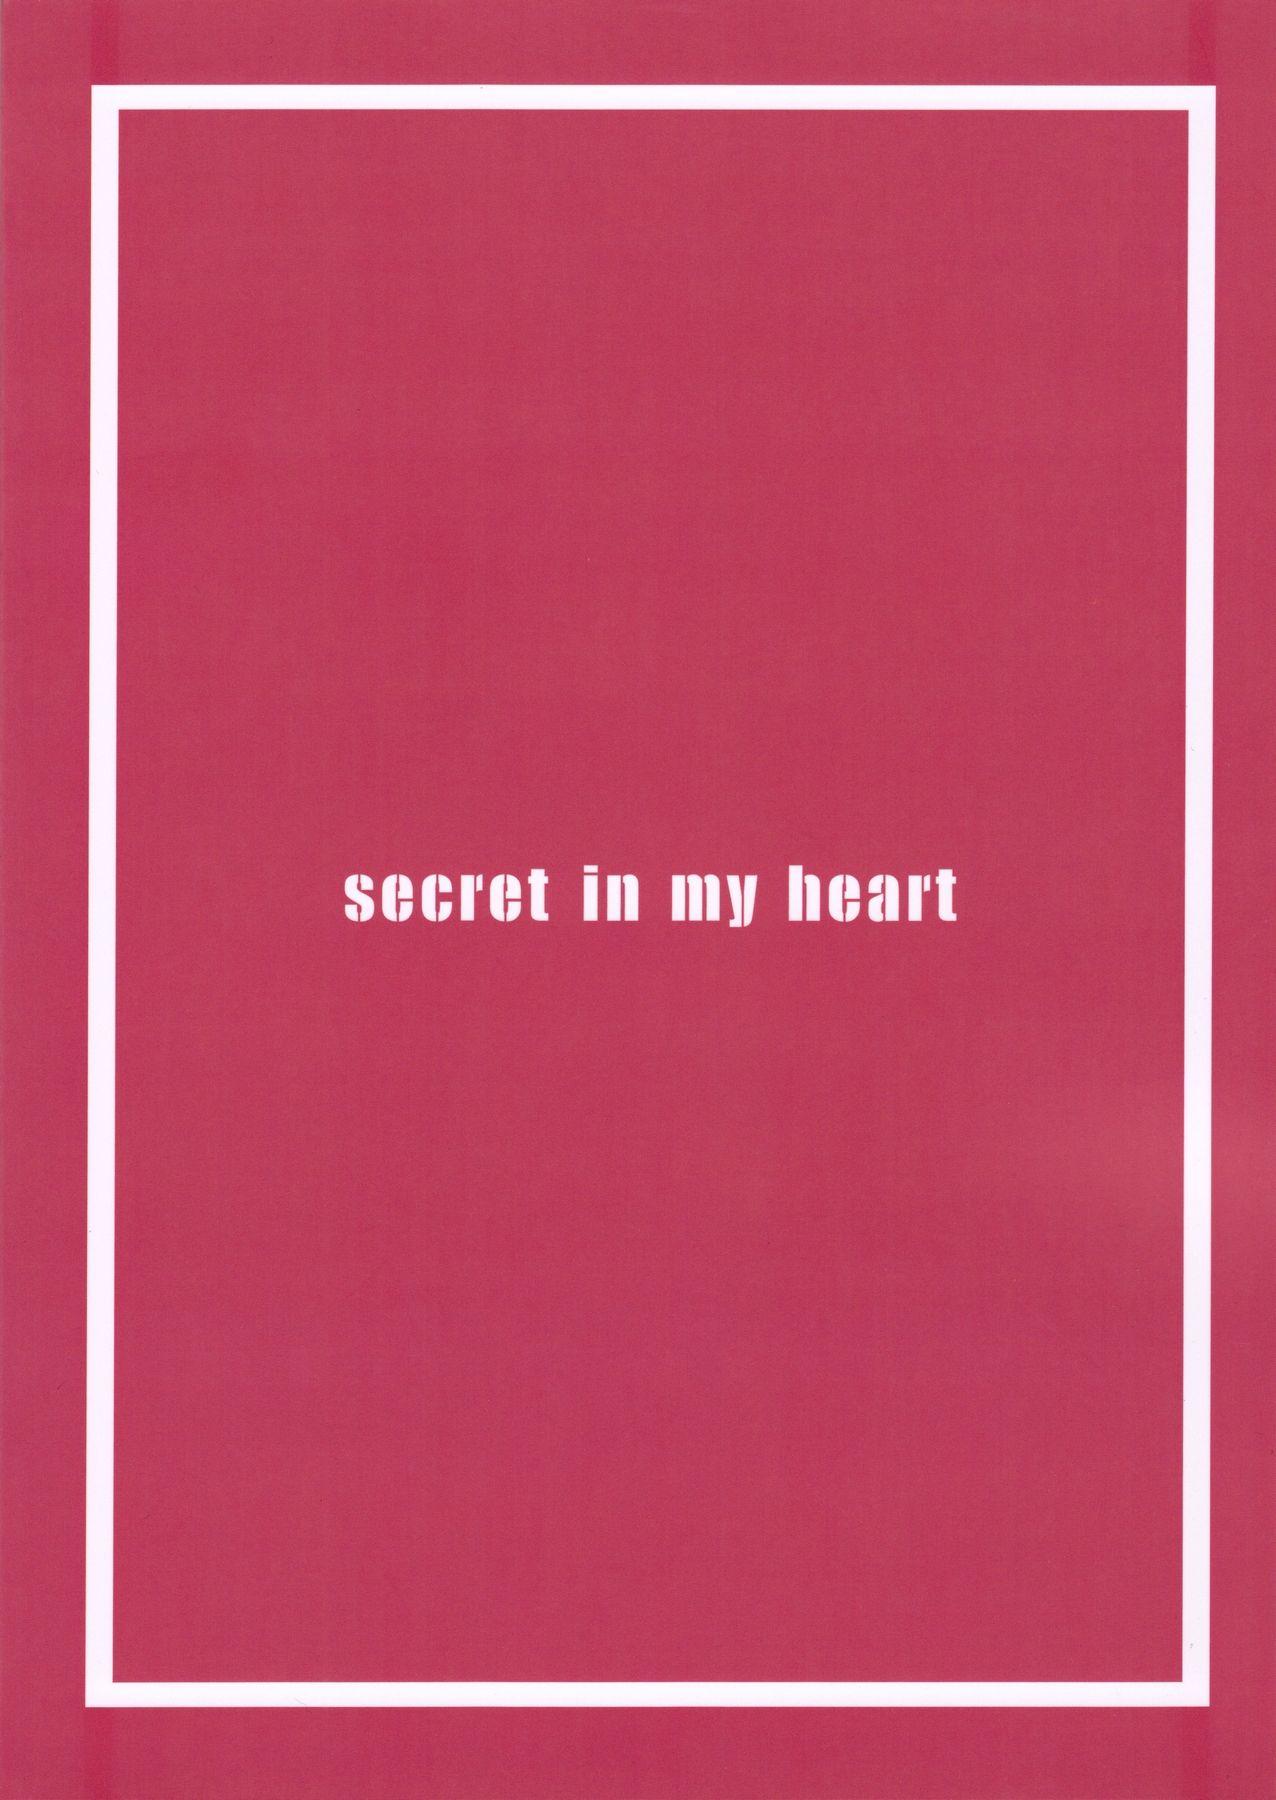 secret in my heart 21